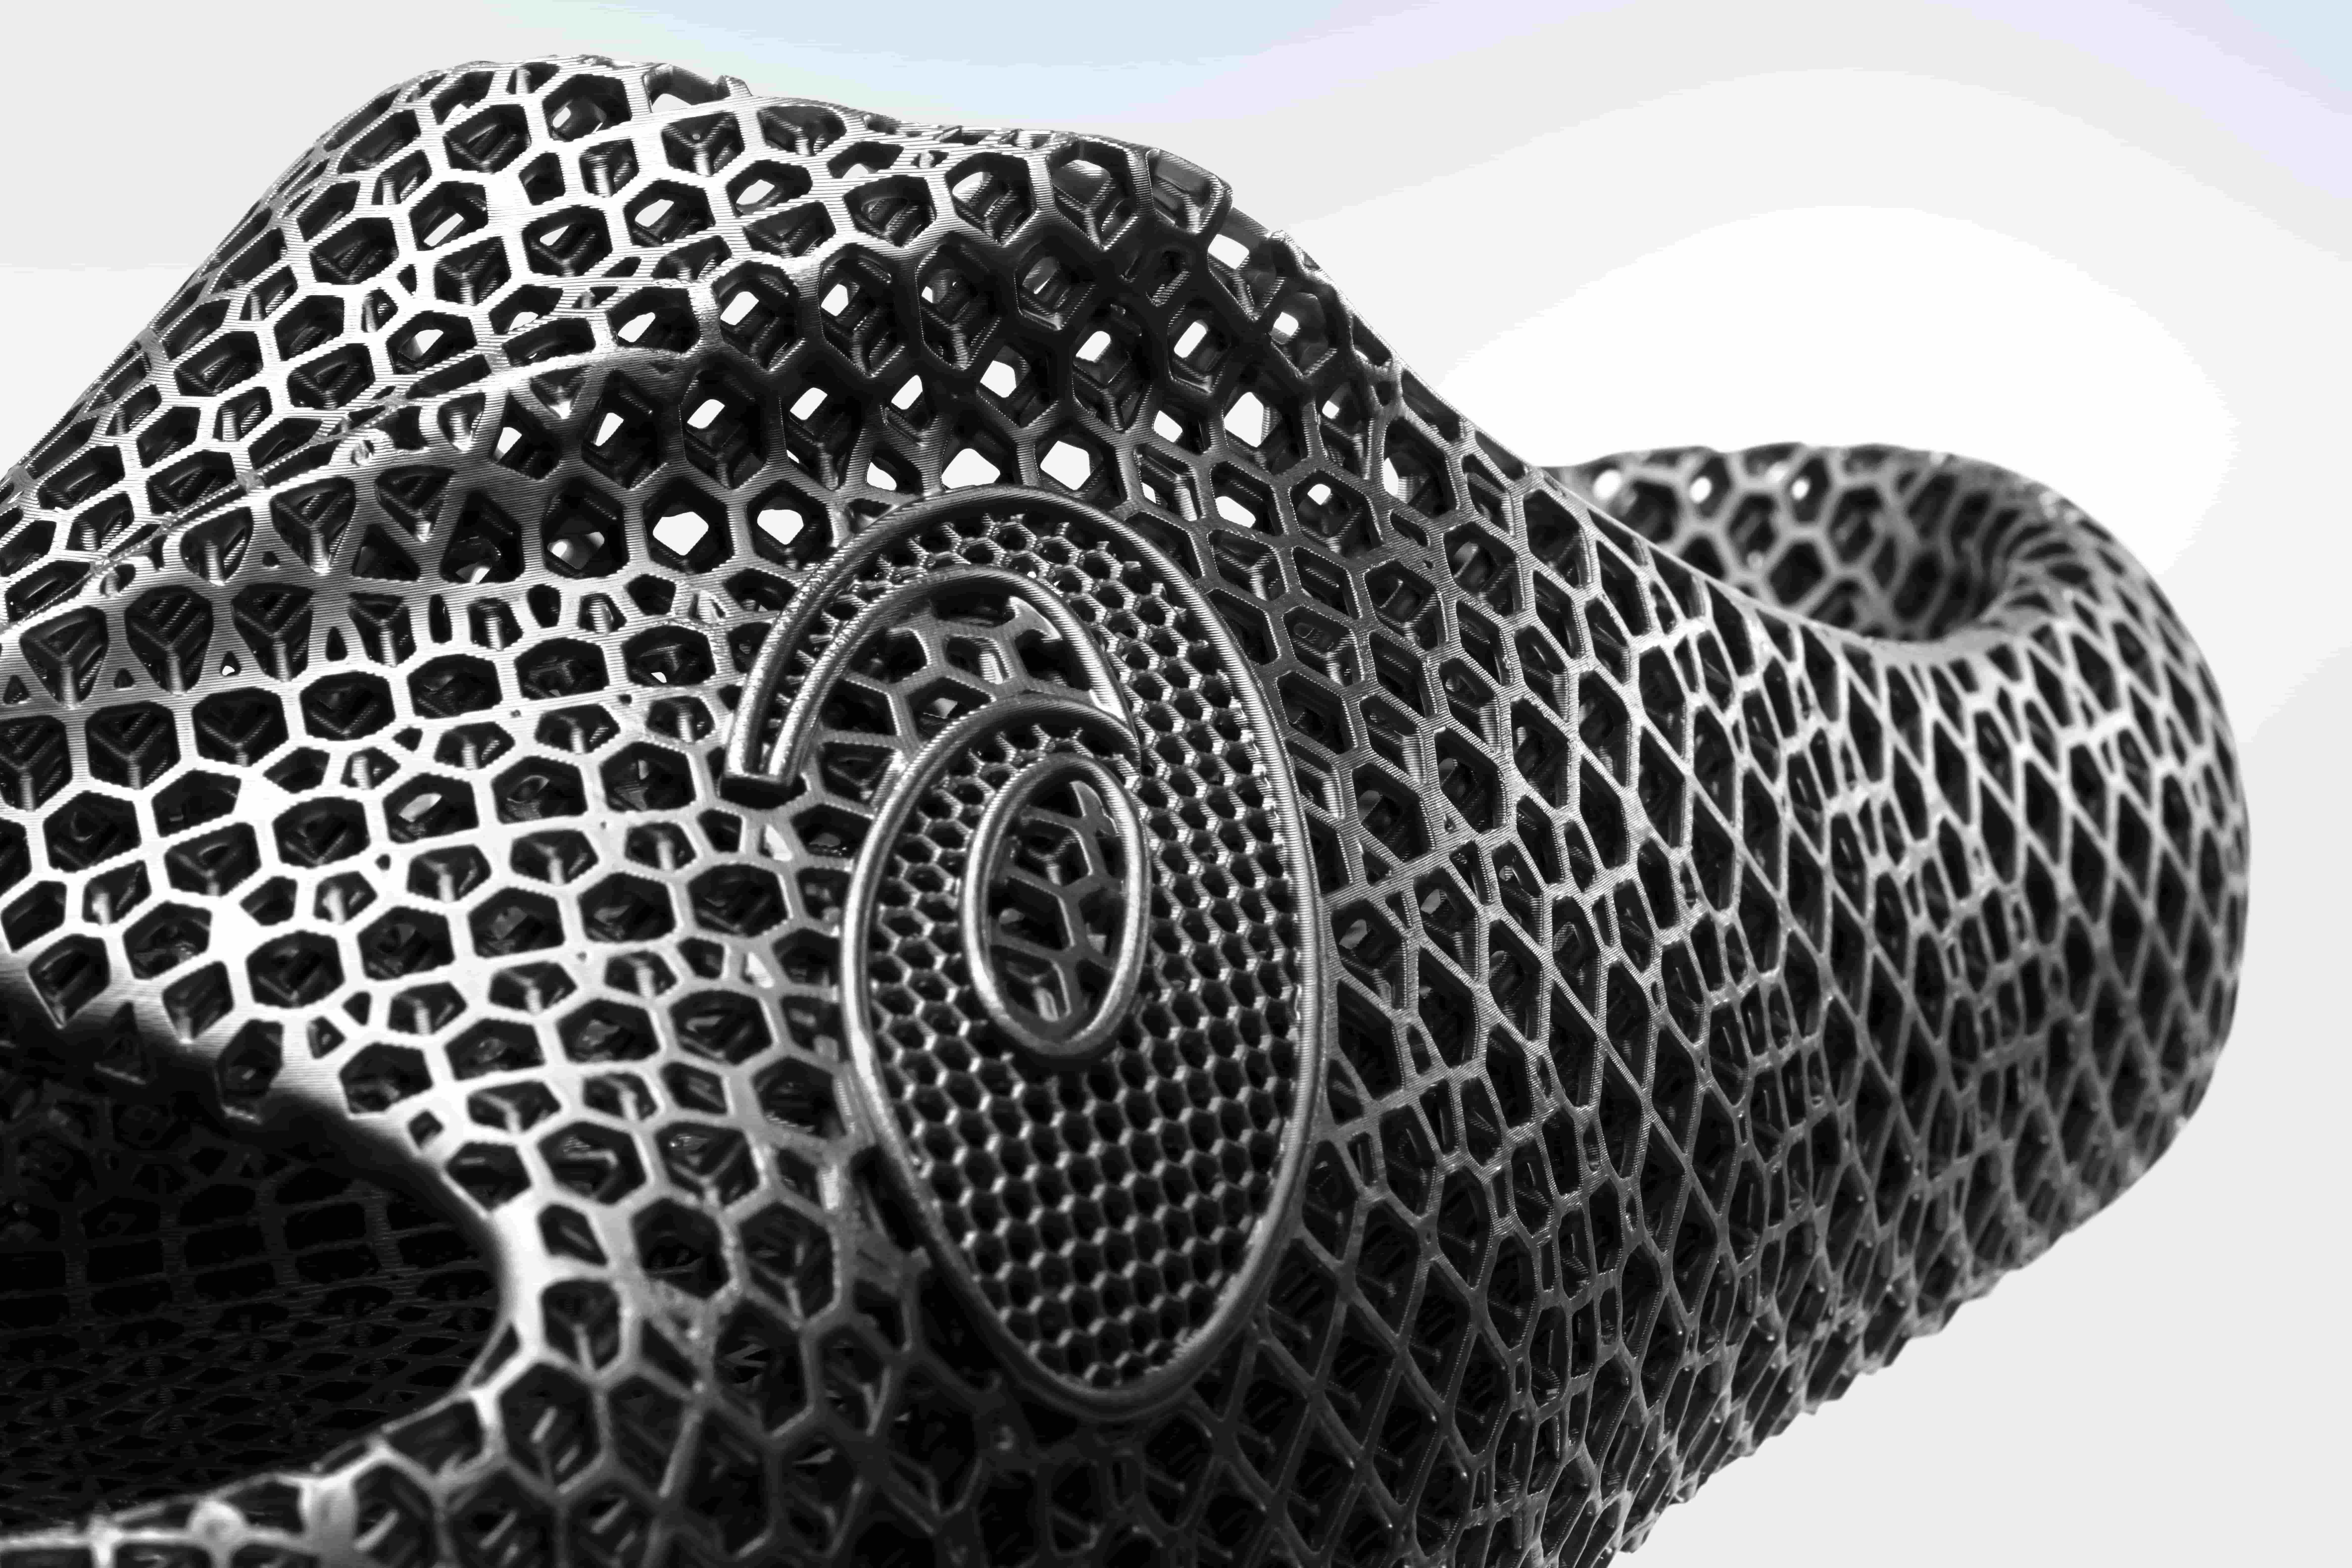 ASICS ACTIBREEZE 3D 拖鞋以創新的3D參數化設計打造出突破性的幾何結構，提供舒適腳感與良好保護